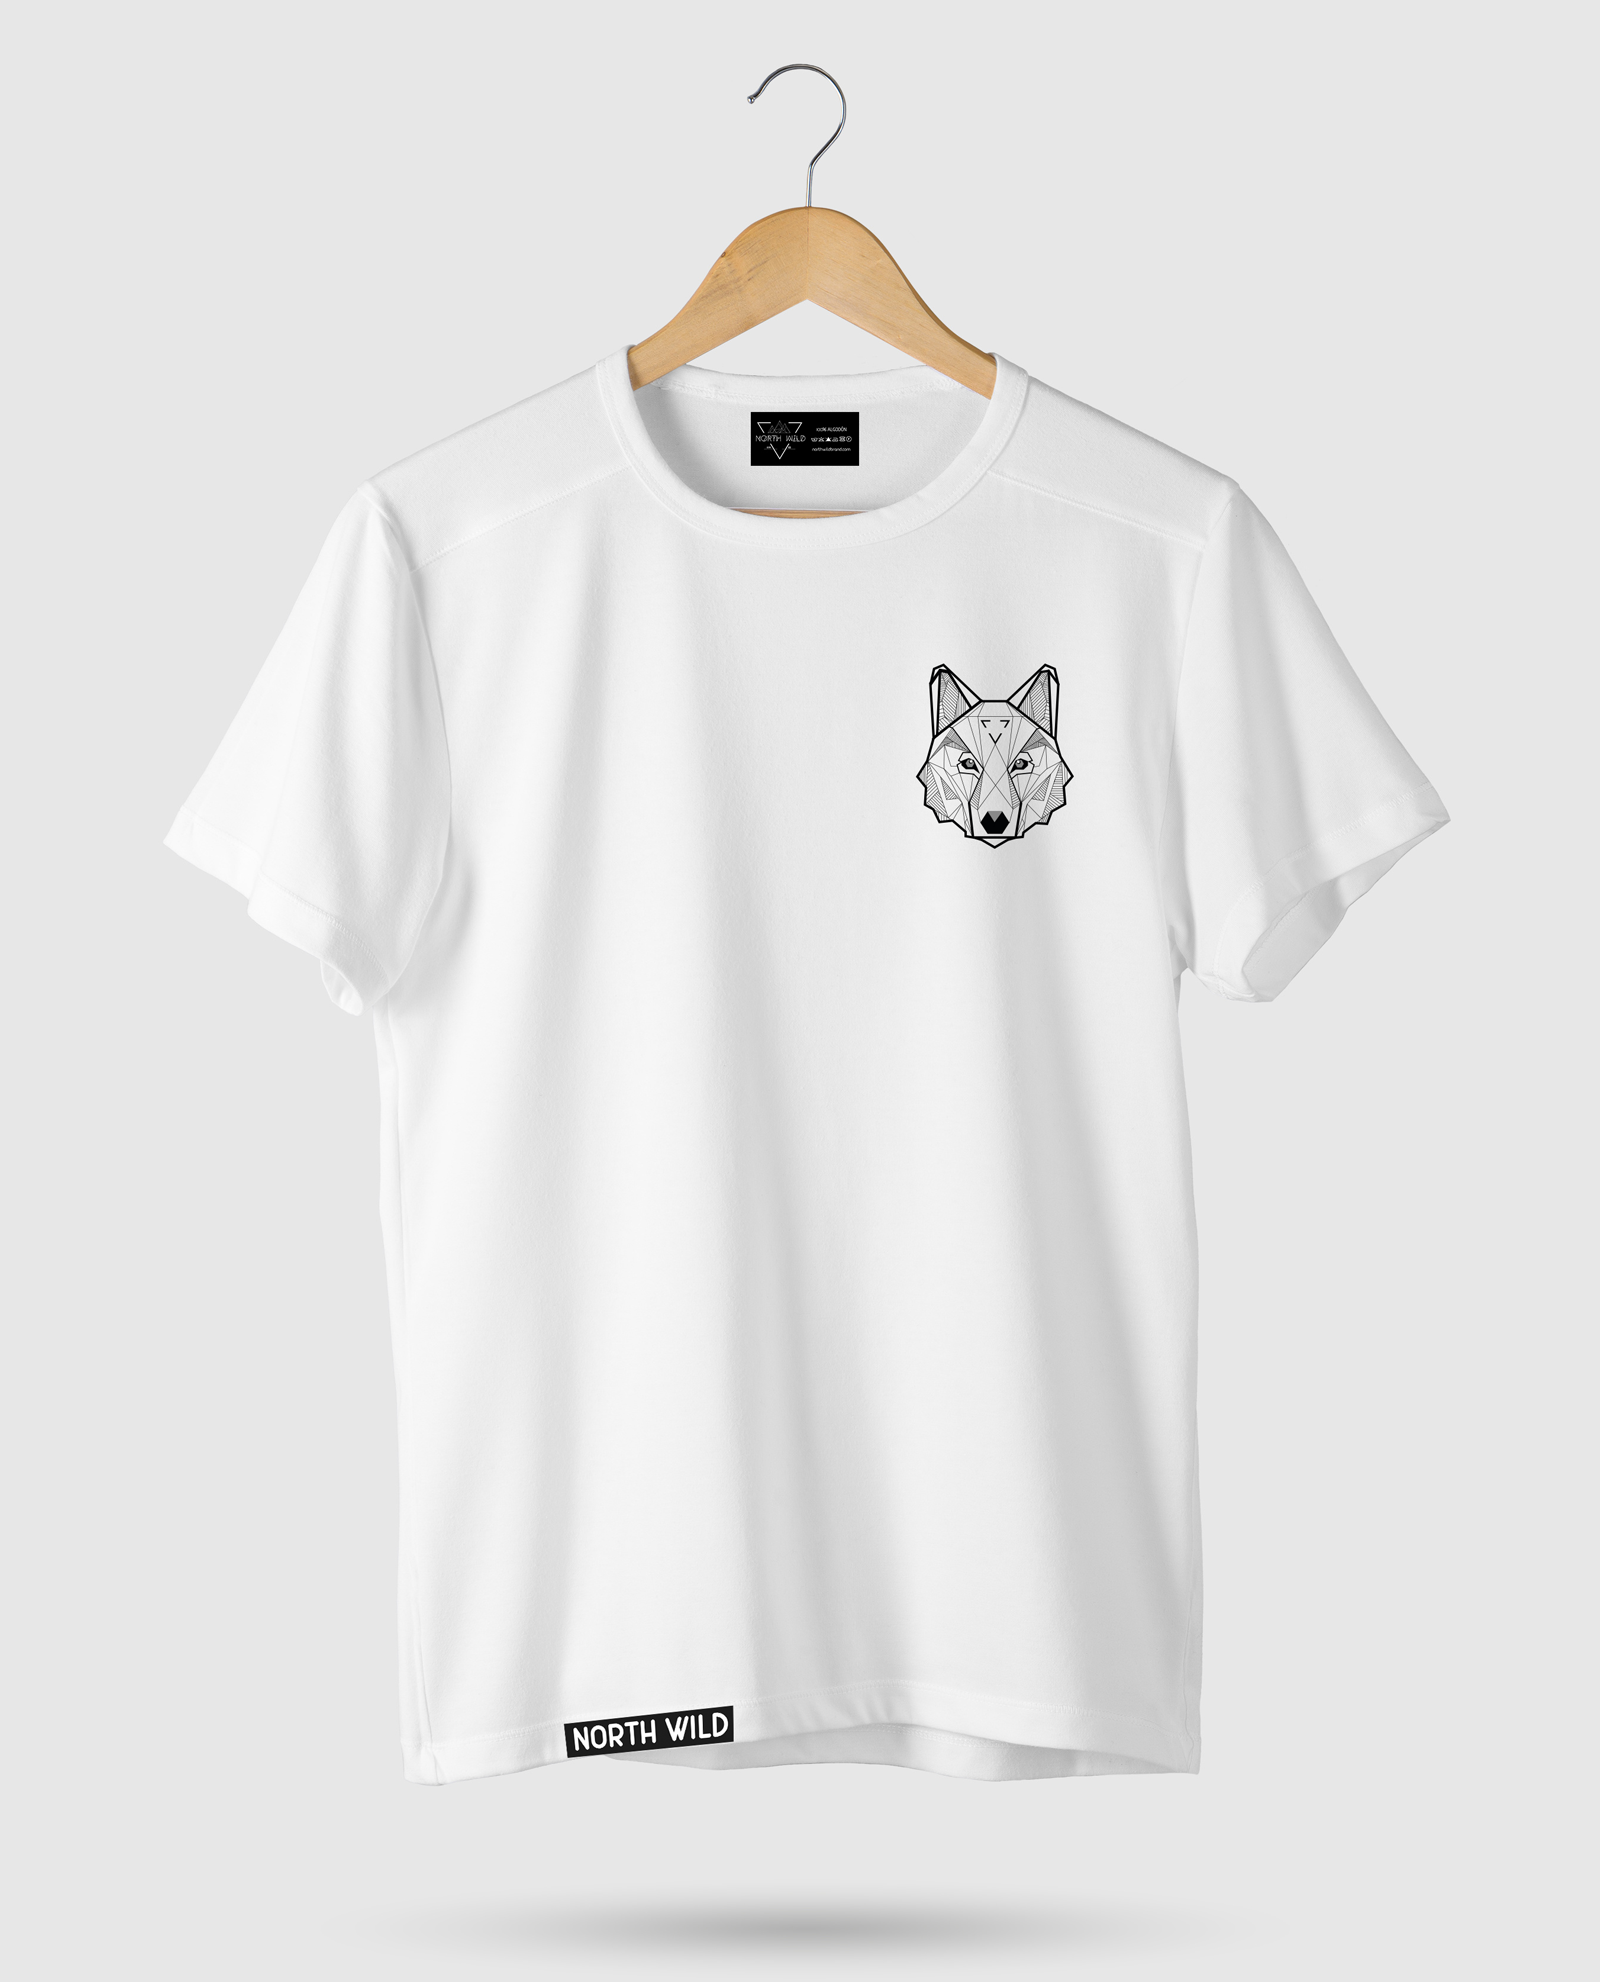 Escrutinio Descodificar codicioso Camiseta Animal Wolf - North Wild Brand